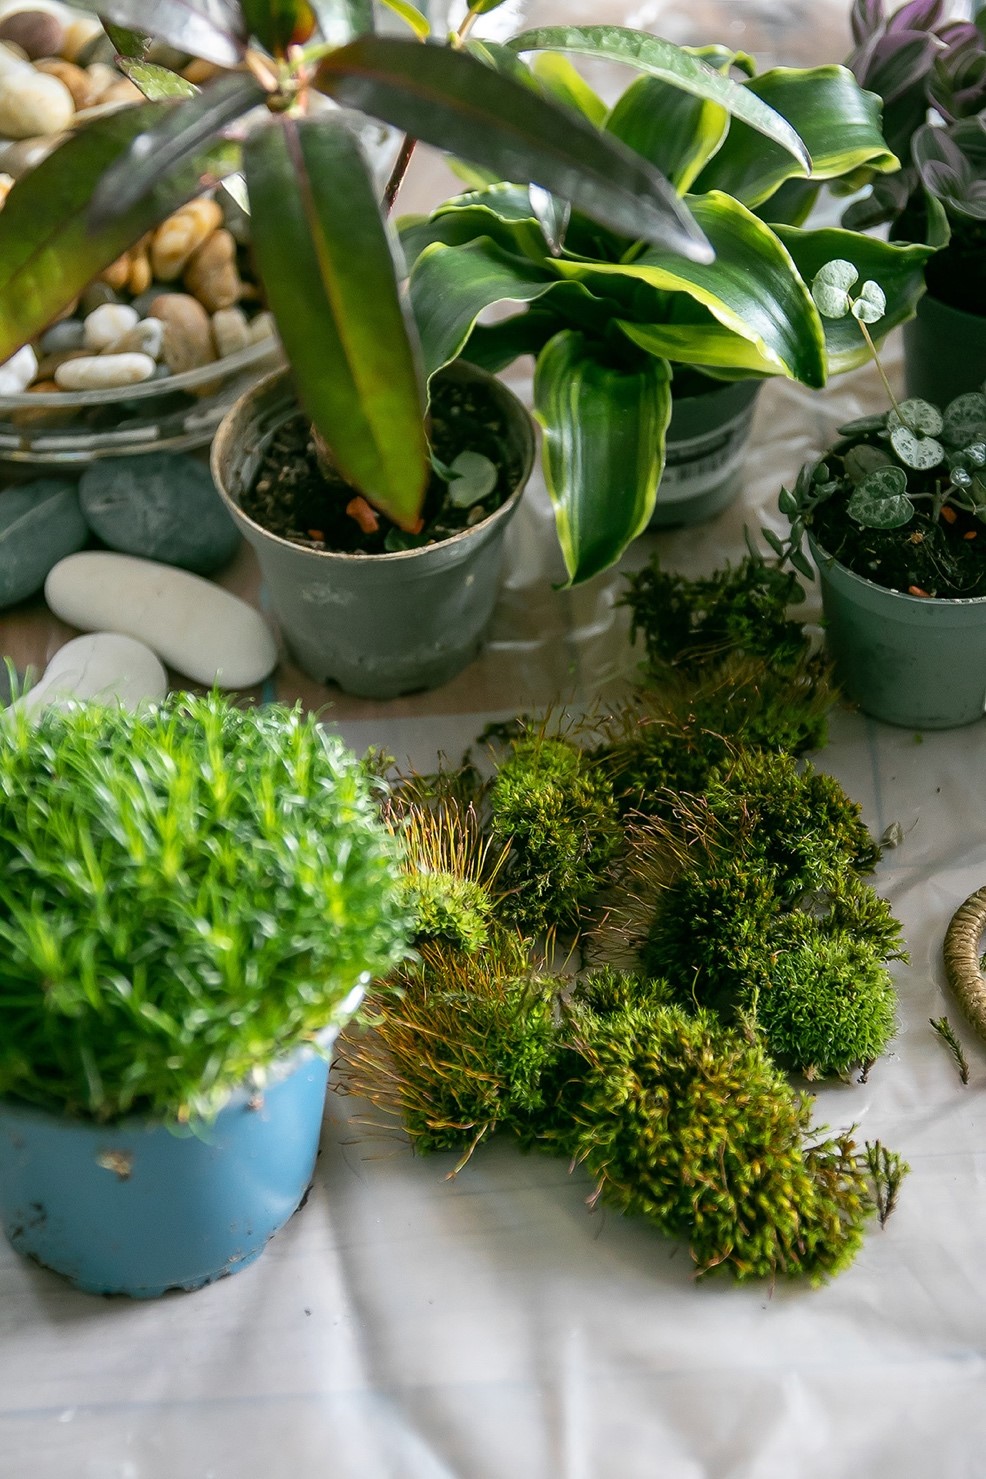 Une image contenant plante d’intérieur, pot de fleurs, herbe, Fines herbesDescription générée automatiquement